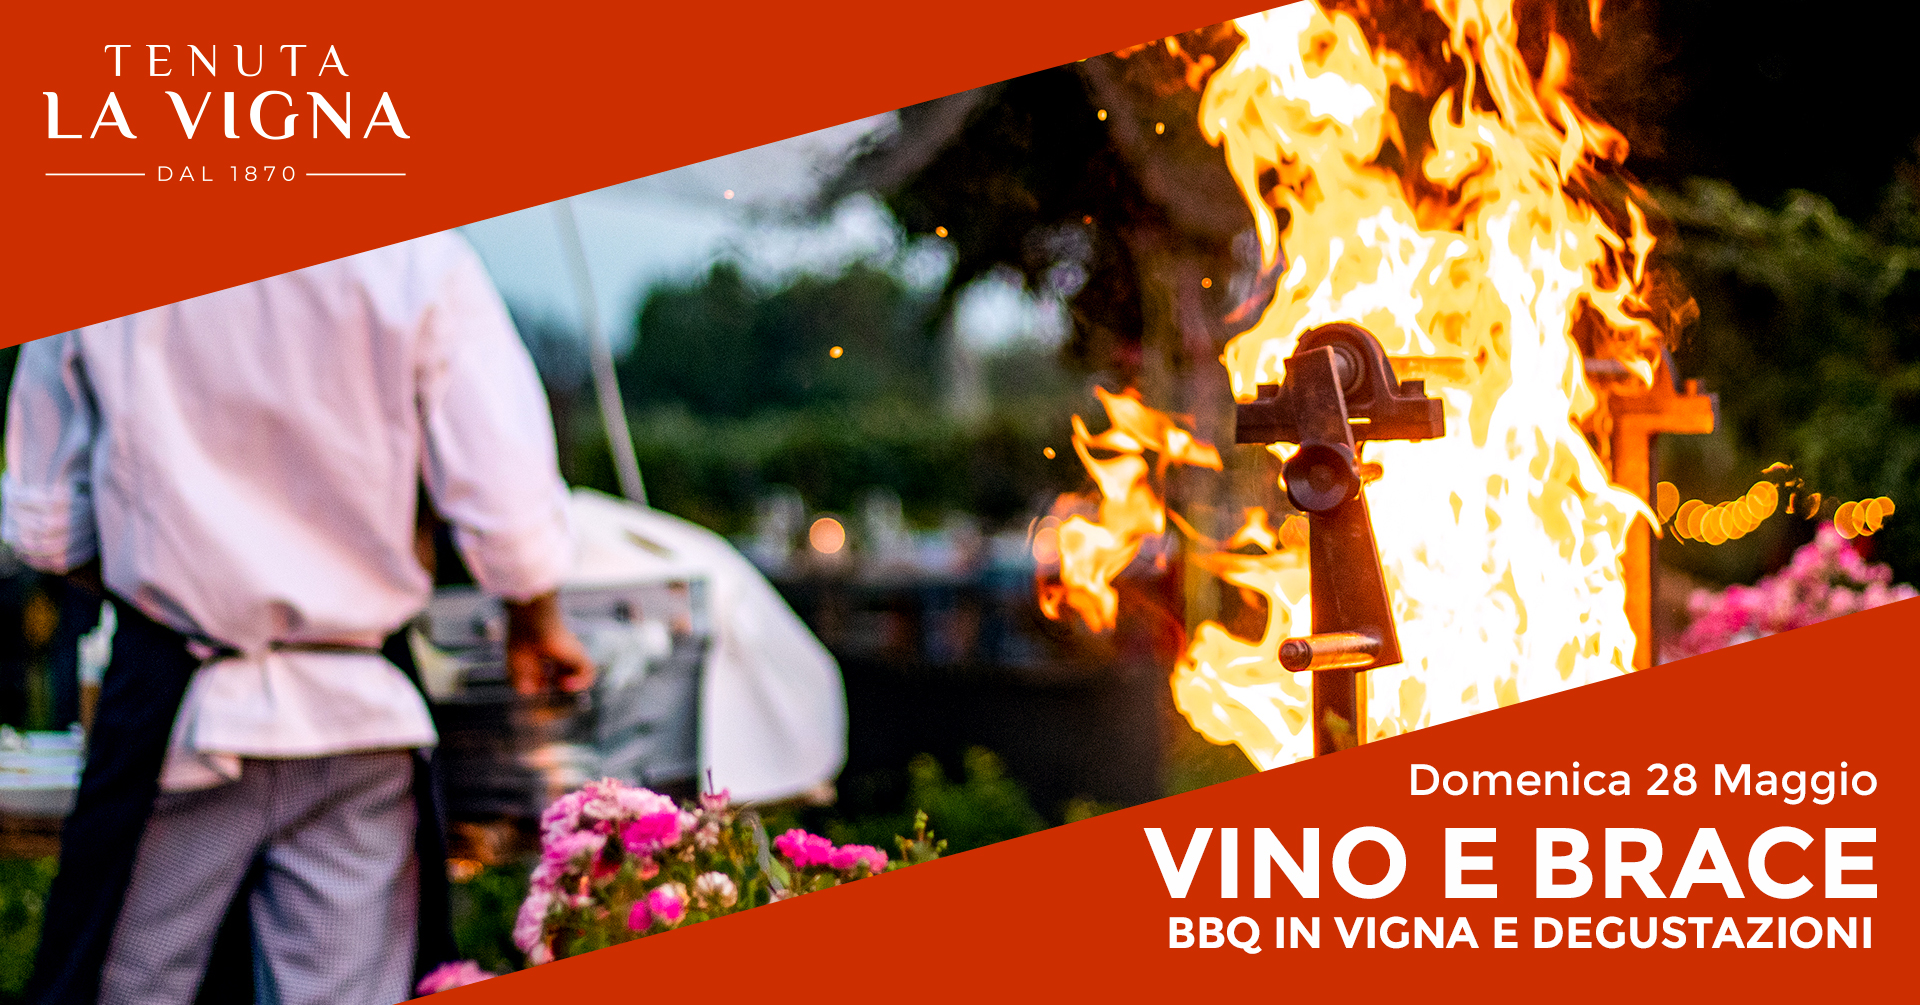 Vino e Brace - Barbecue in vigna a Tenuta la Vigna